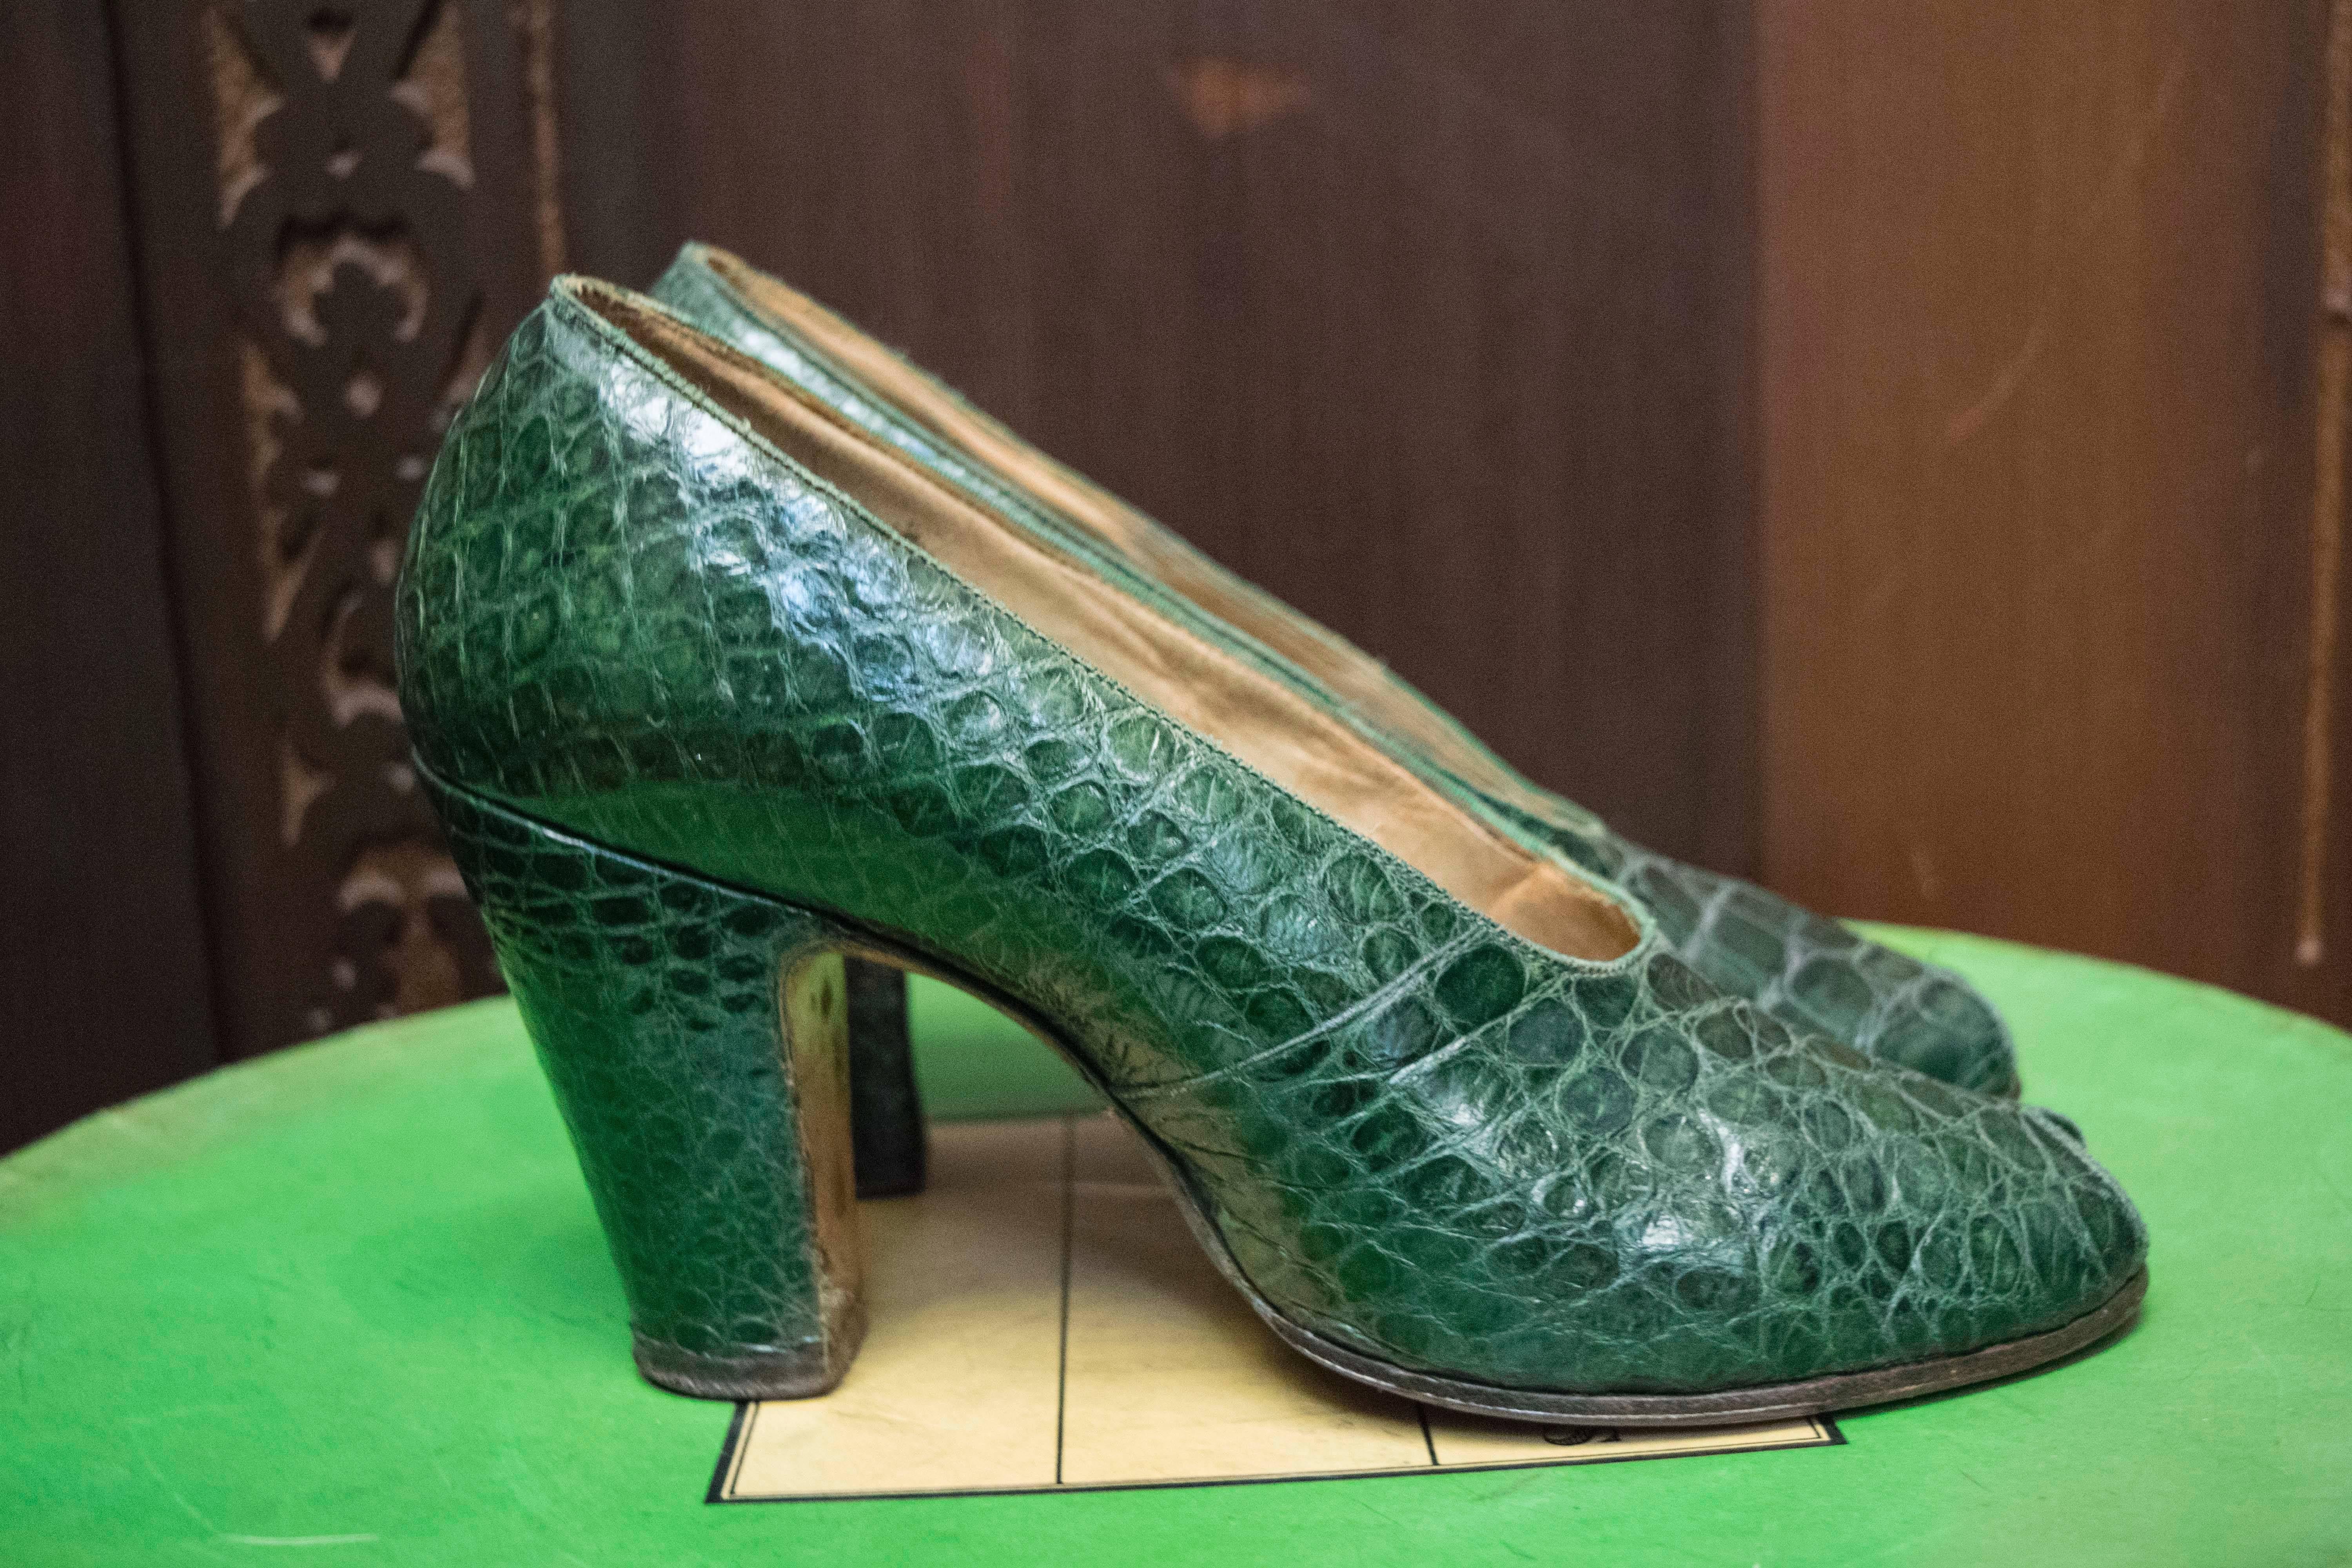 1930s heels